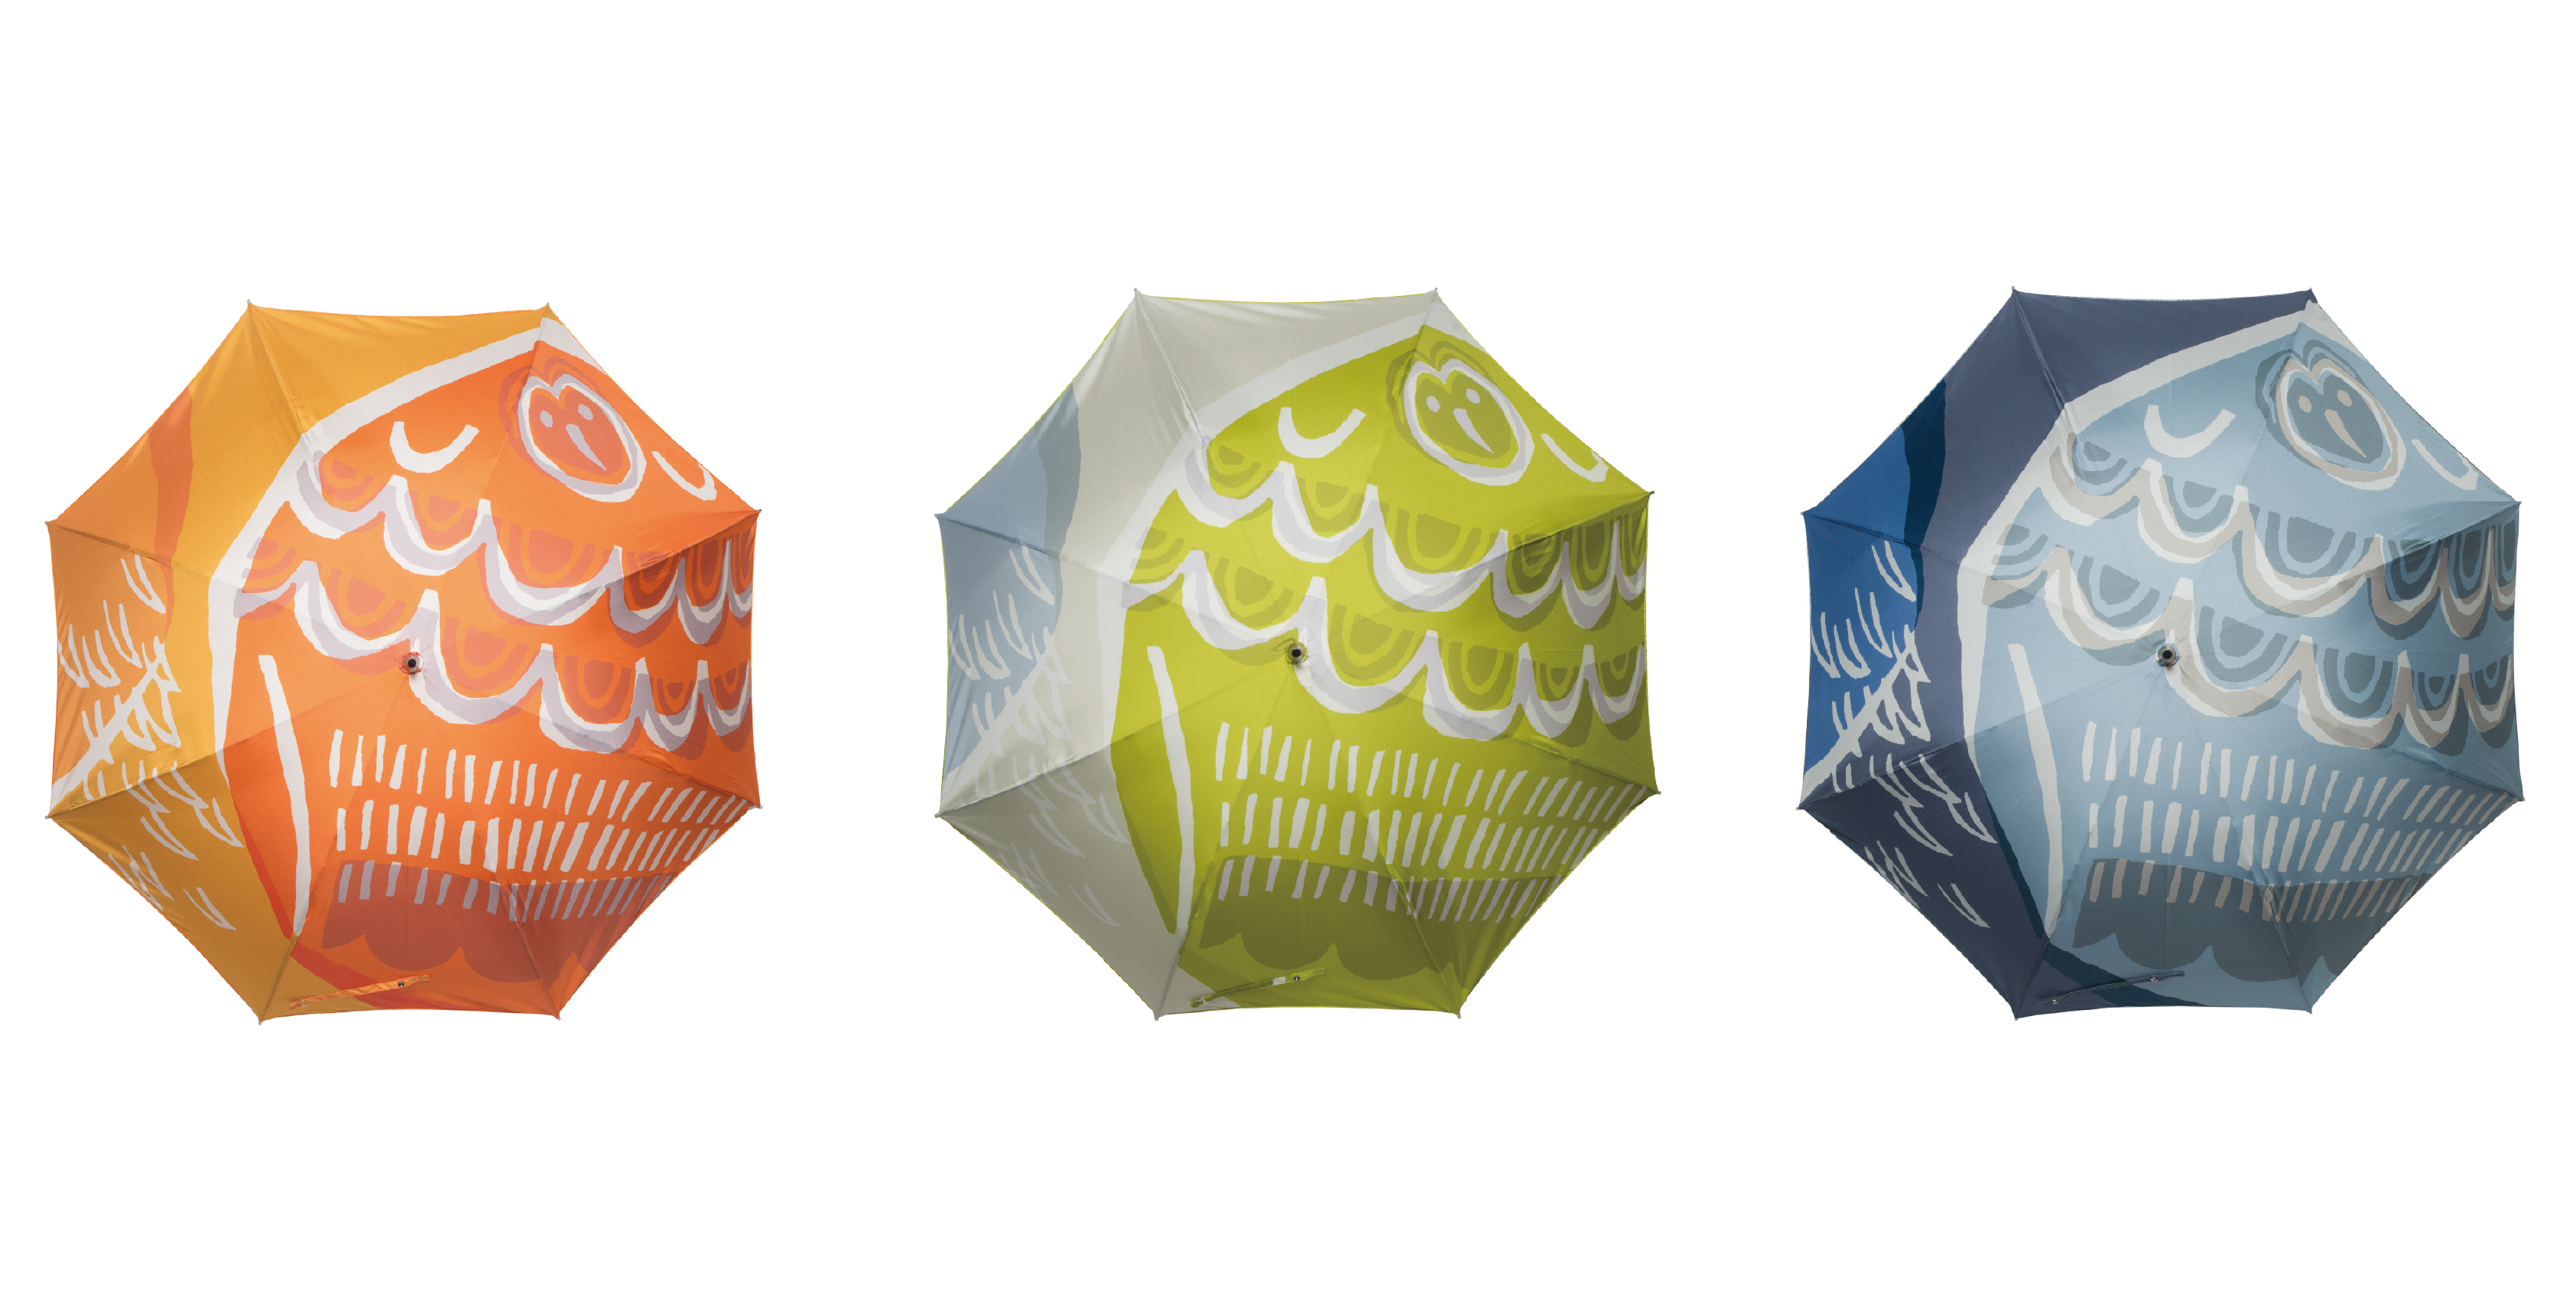 鈴木マサル 日傘umbrella & parasol 2013 amagaeru